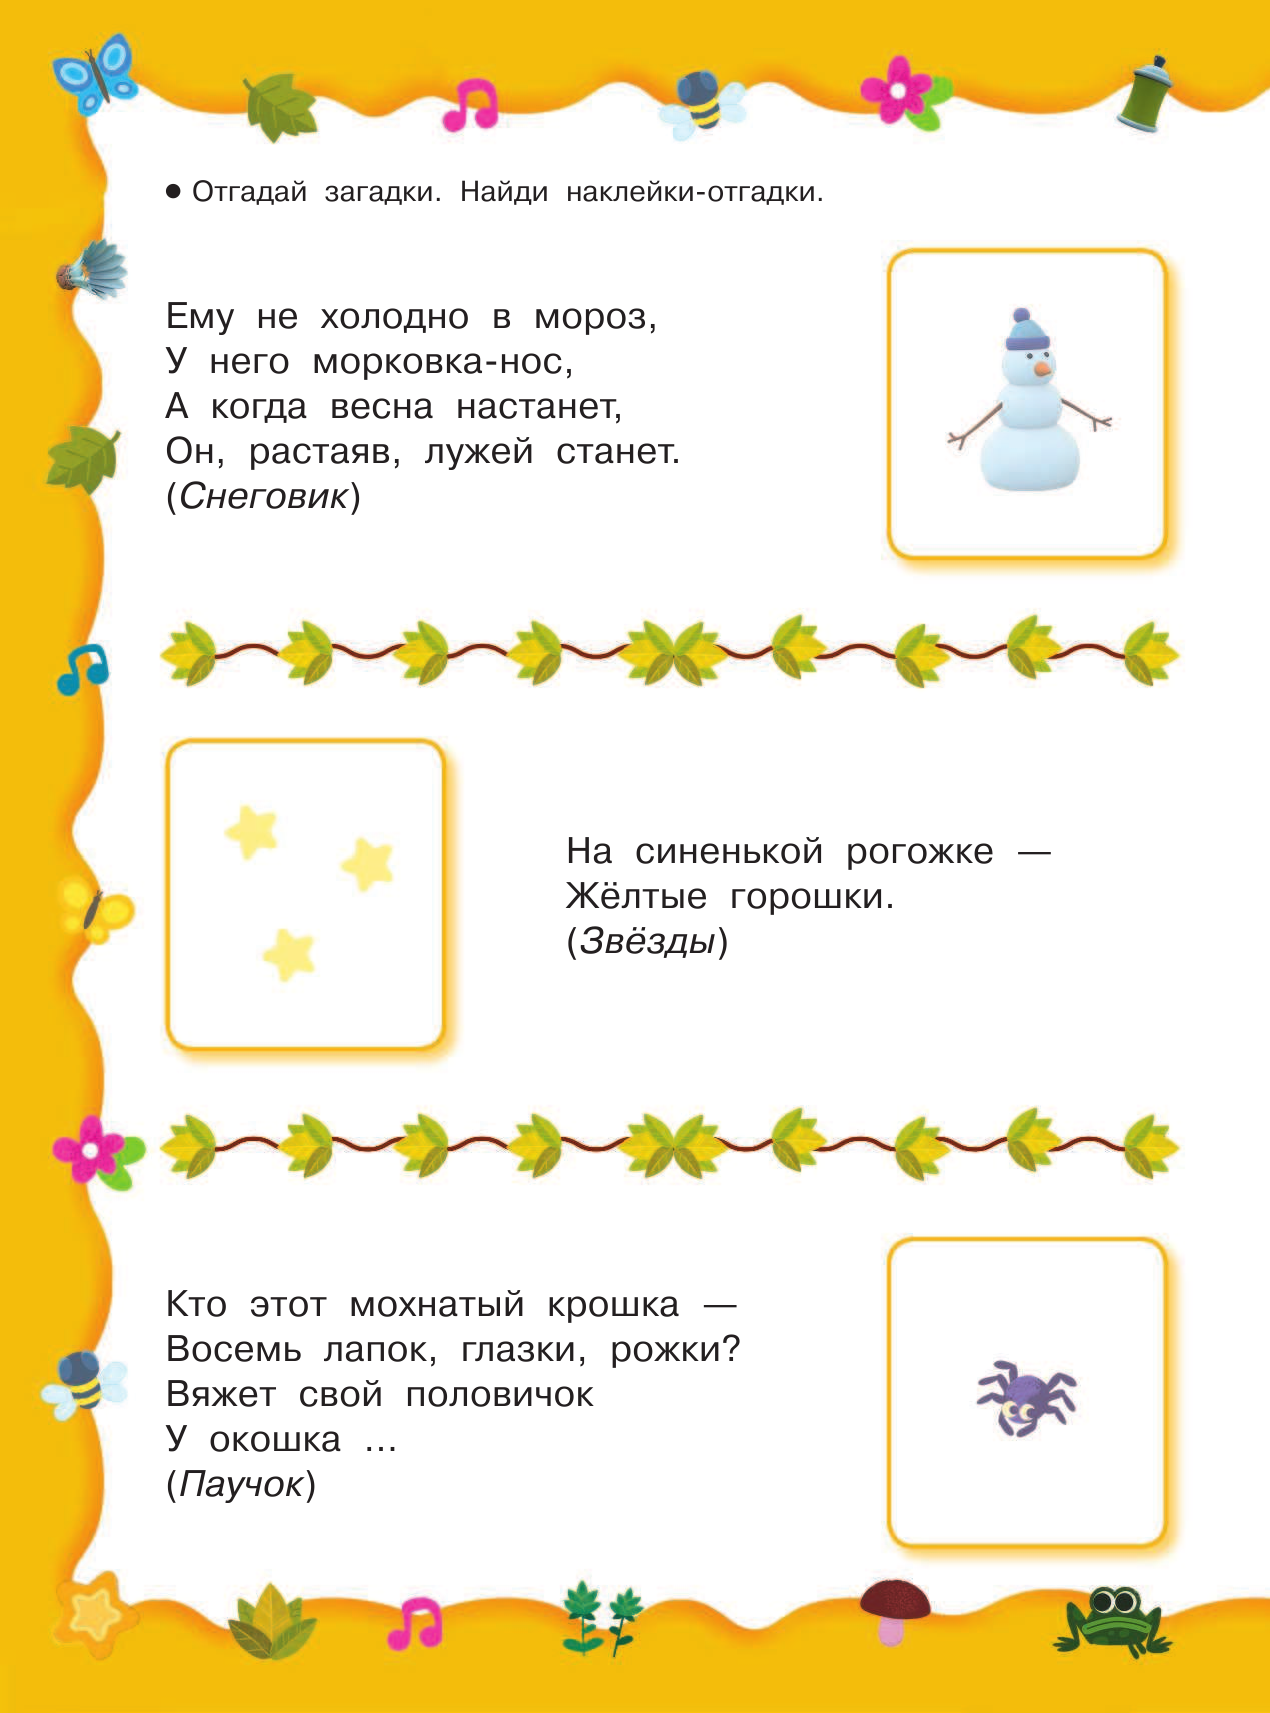  Загадки с наклейками от Ми-мимишек - страница 3